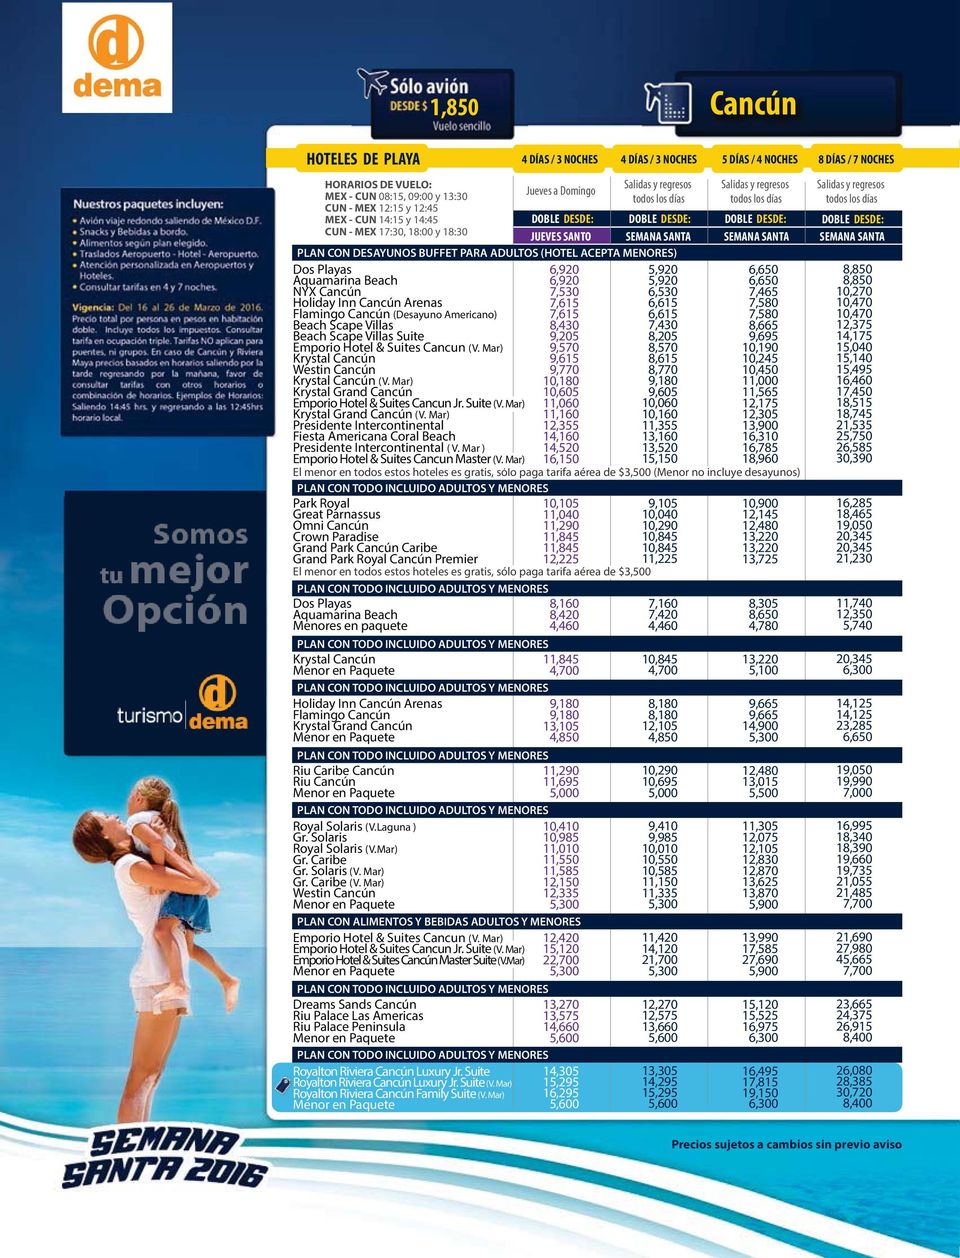 8,430 7,430 Beach Scape Villas Suite 9,205 8,205 Emporio Hotel & Suites Cancun (V. Mar) 9,570 8,570 Krystal Cancún 9,615 8,615 Westin Cancún 9,770 8,770 Krystal Cancún (V.